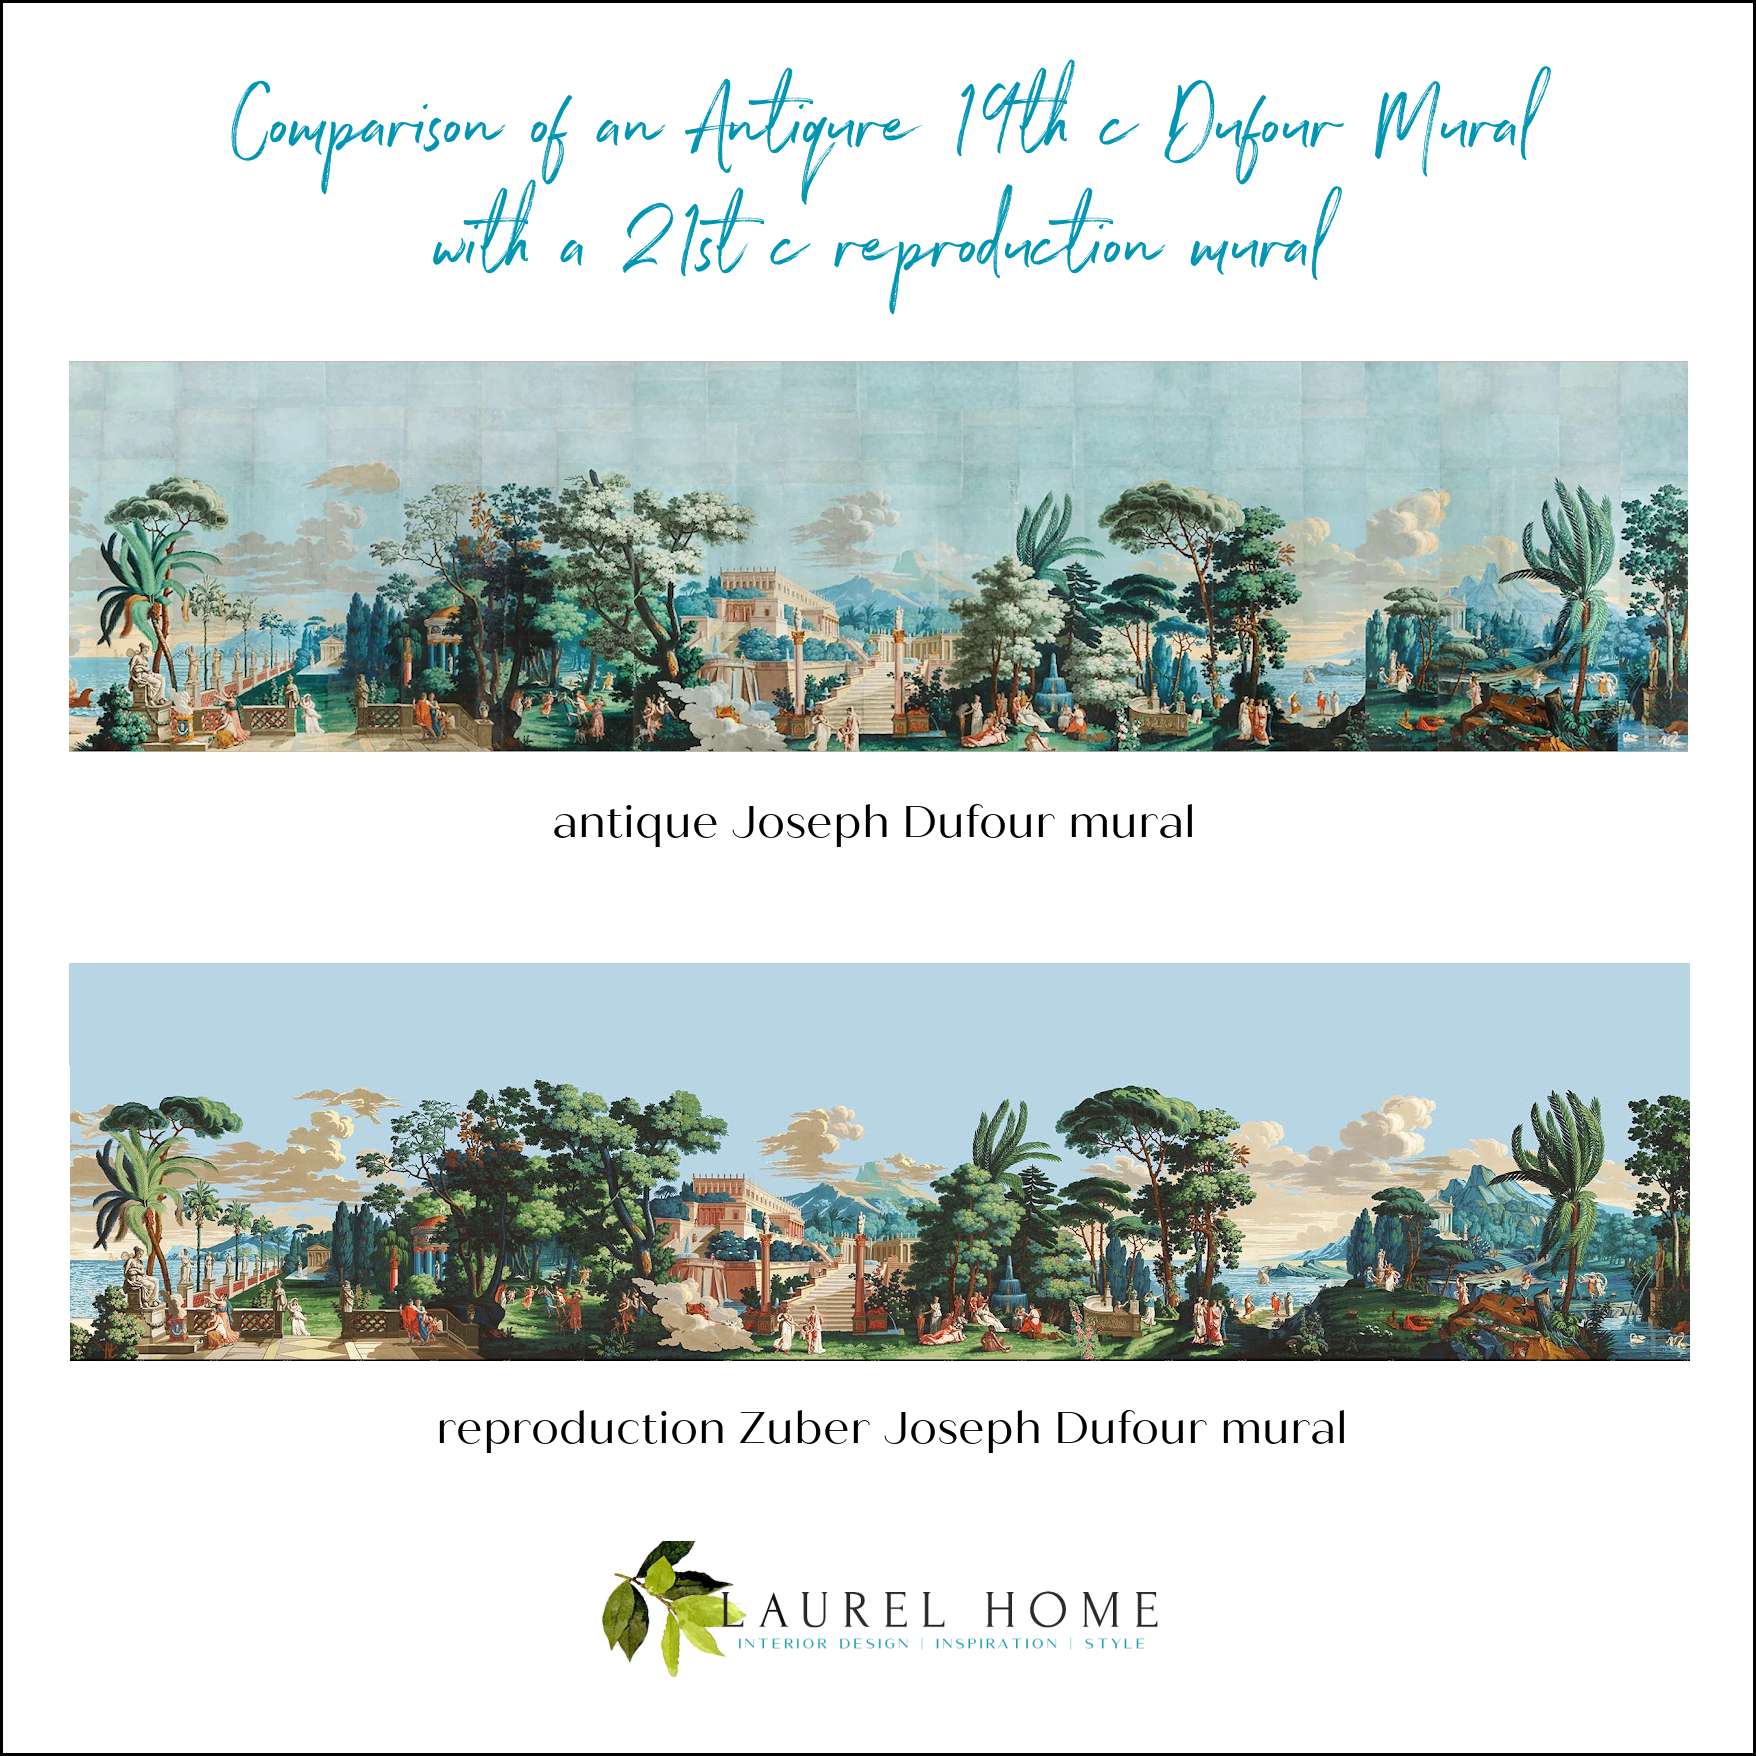 ile de calypso antique and new Joseph Dufour murals